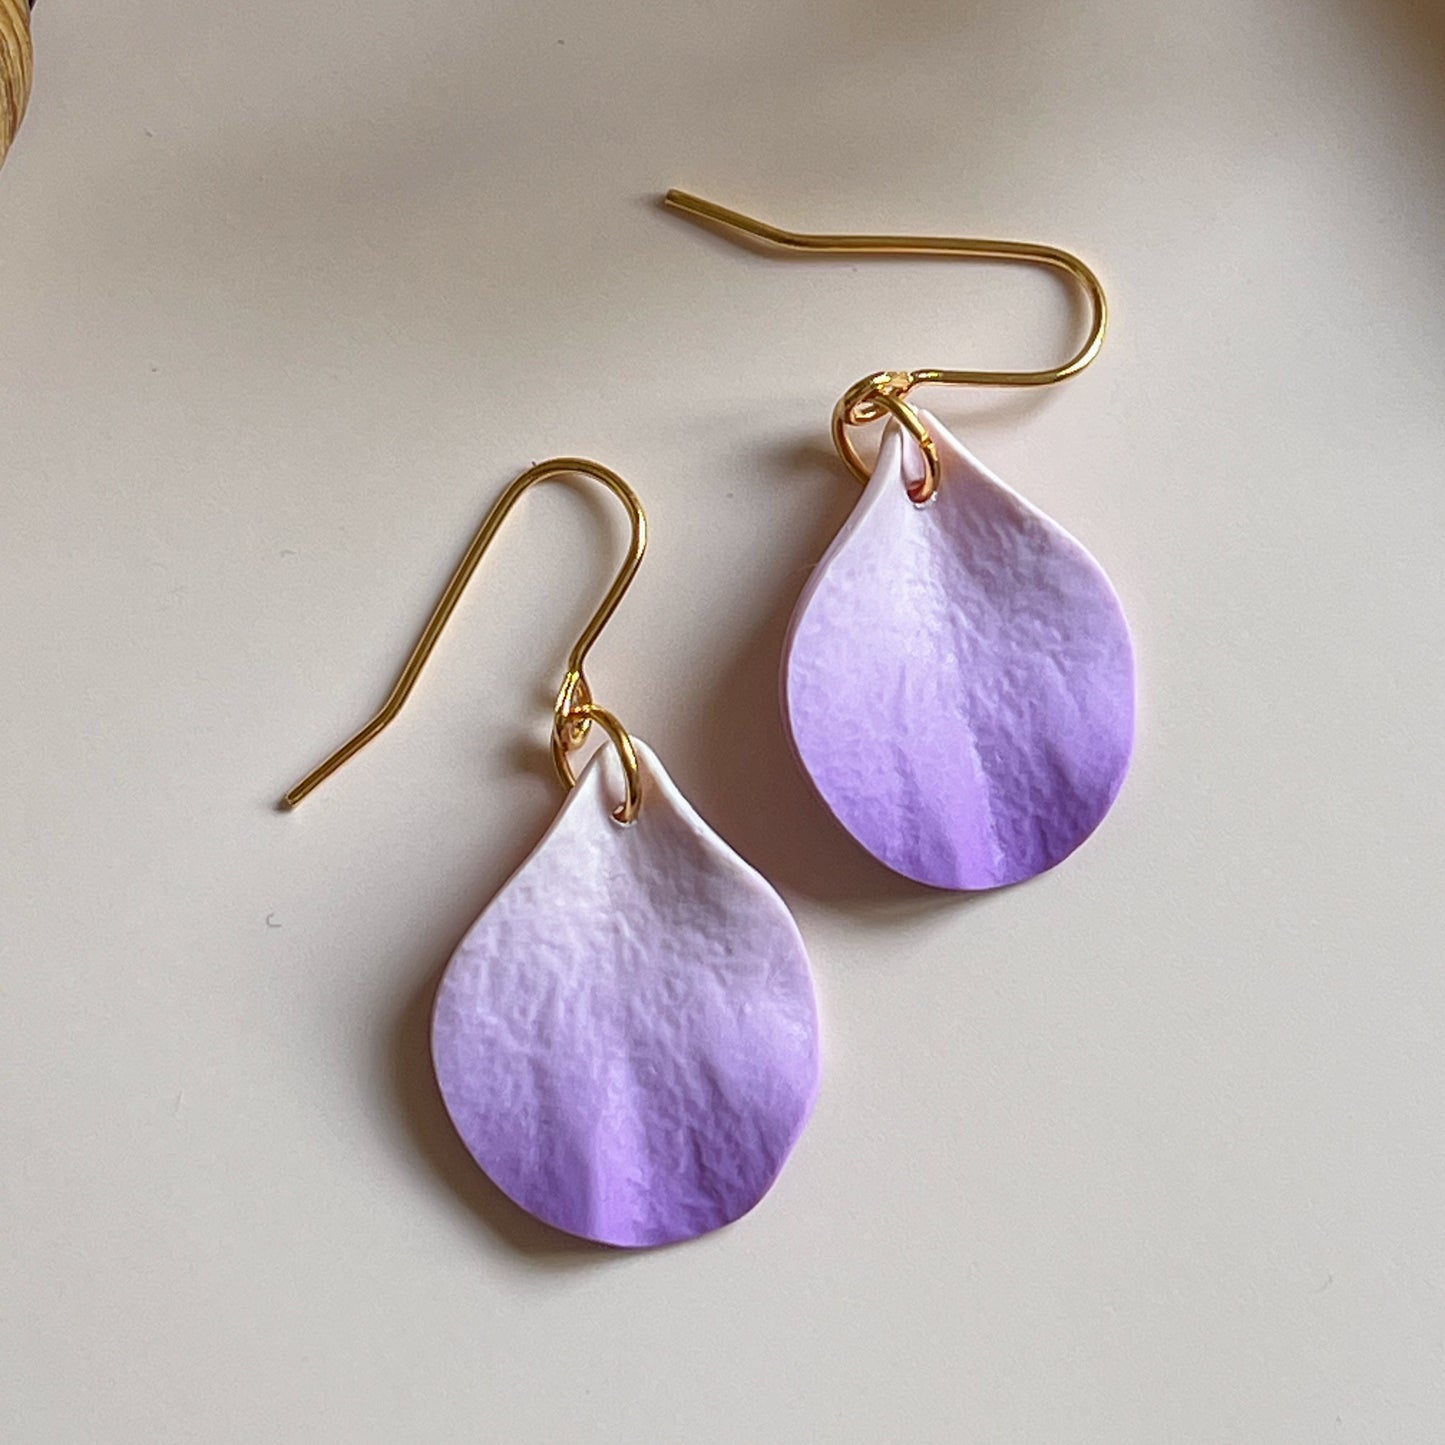 DELEN | small rose petal hook earrings in lilac ombré